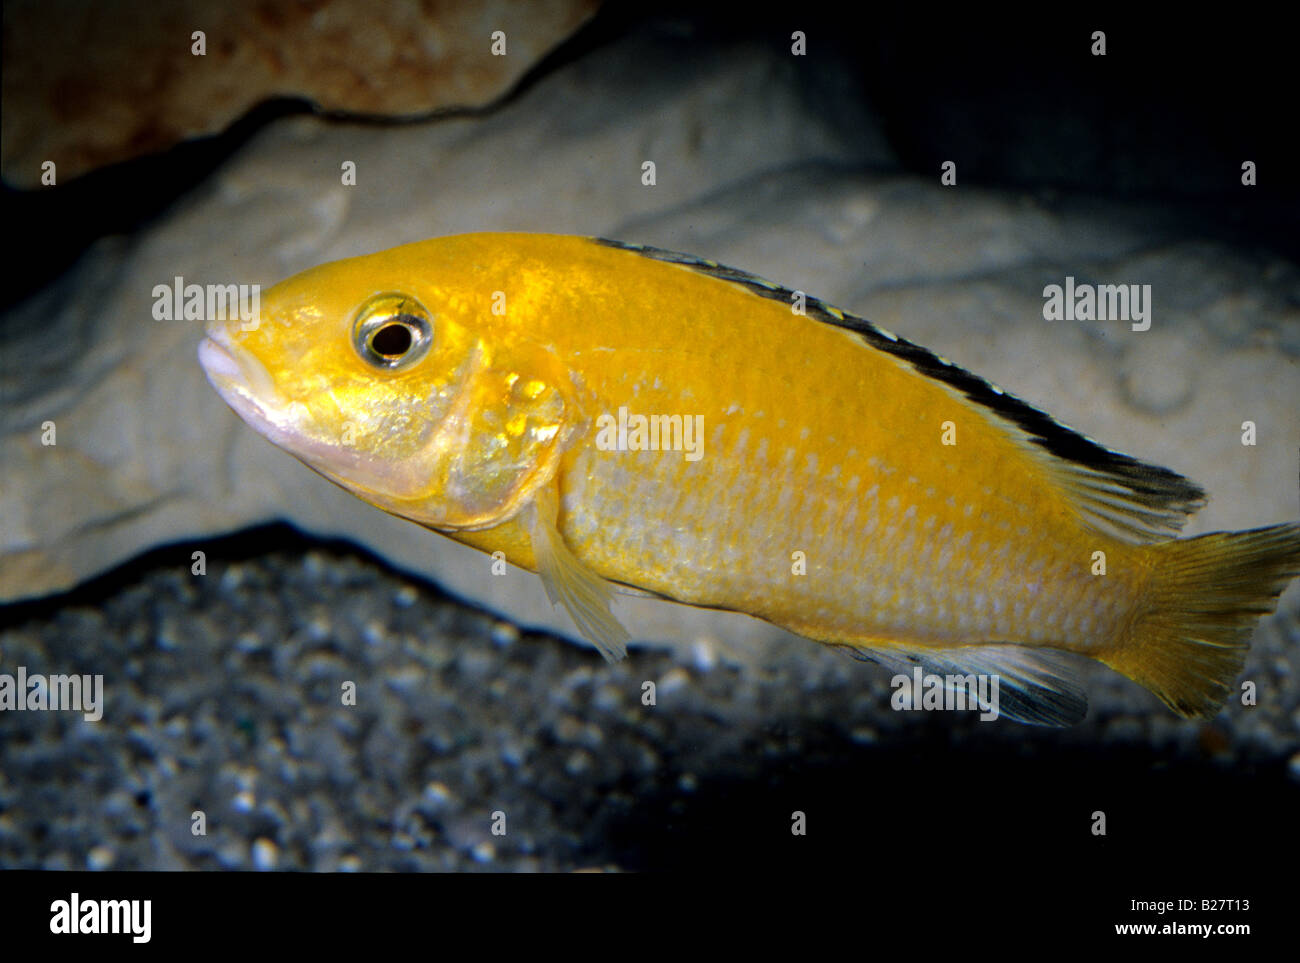 Labidochromis coeruleus yellow, Malawi Lake cichlid, Africa Stock Photo